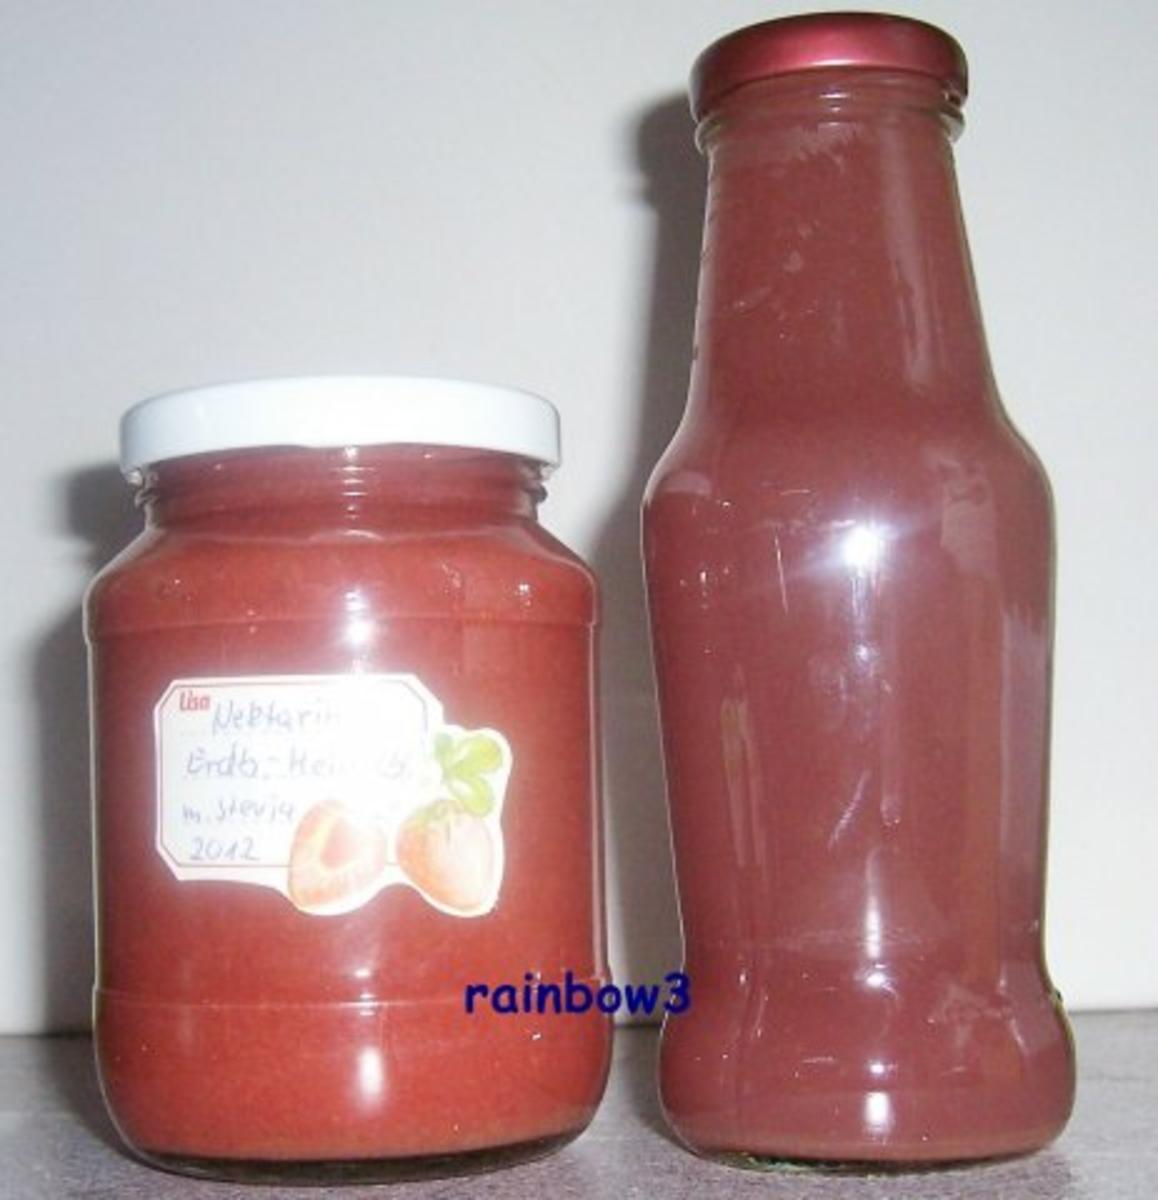 Einmachen: Nektarinen-Erdbeer-Heidelbeer-Marmelade - Rezept von rainbow3